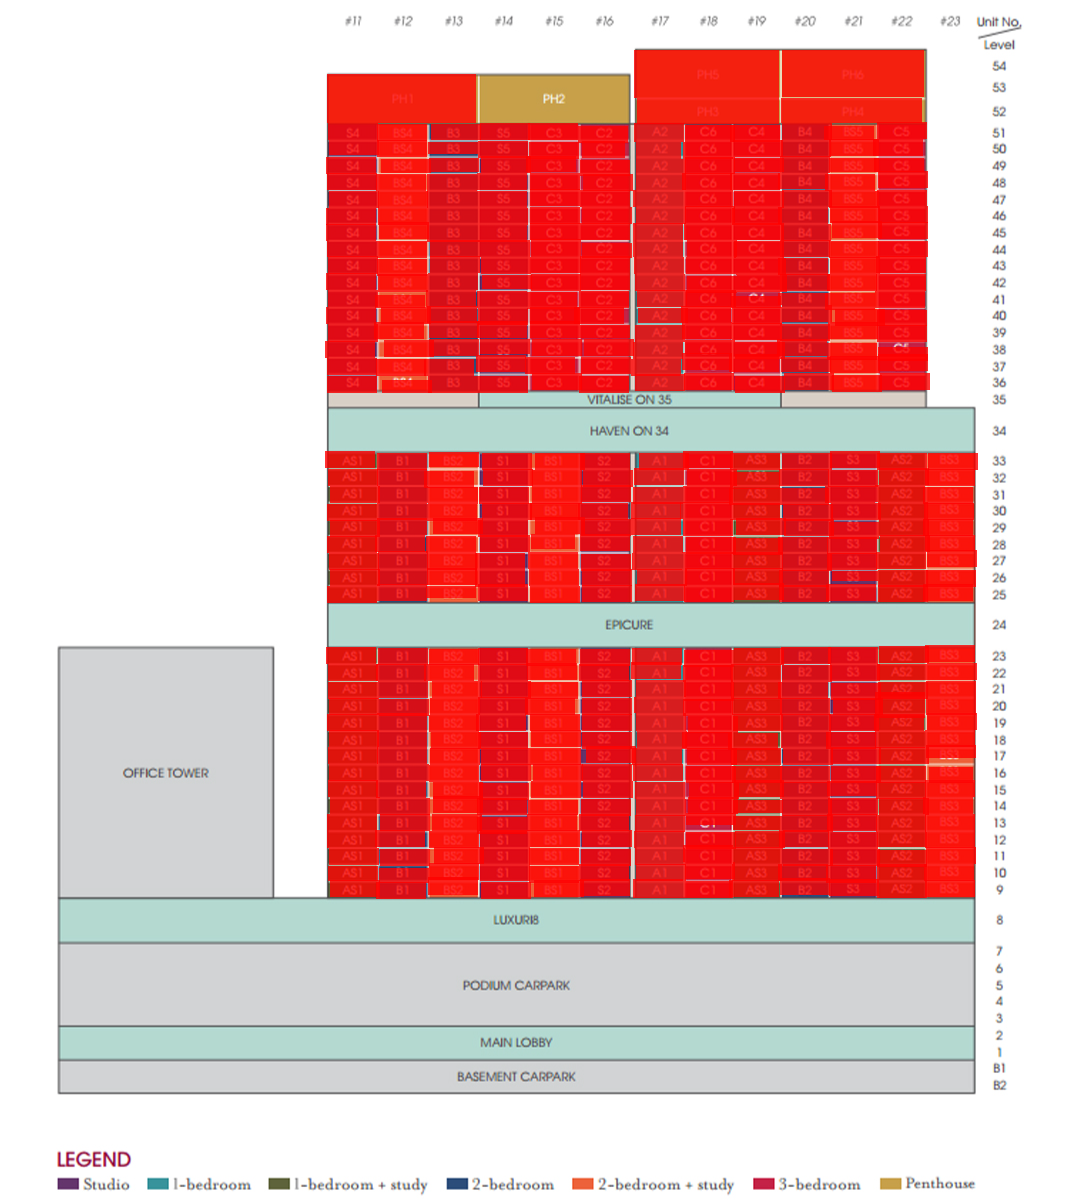 v-on-shenton-availability-chart